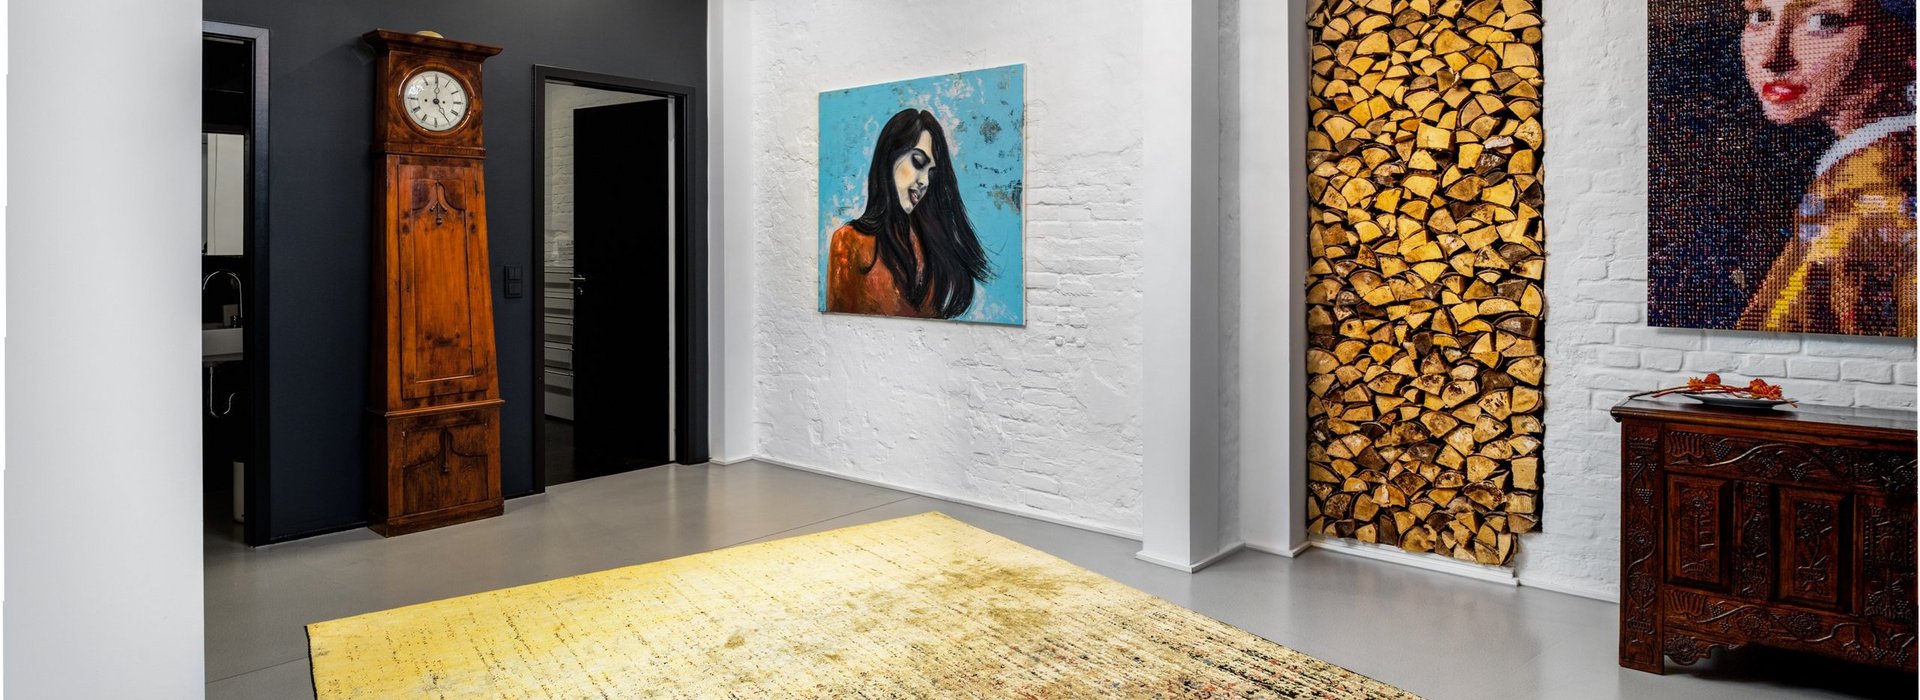 Gelber Teppich im Wohnhaus in Berlin mit auffälligen Wandbildern